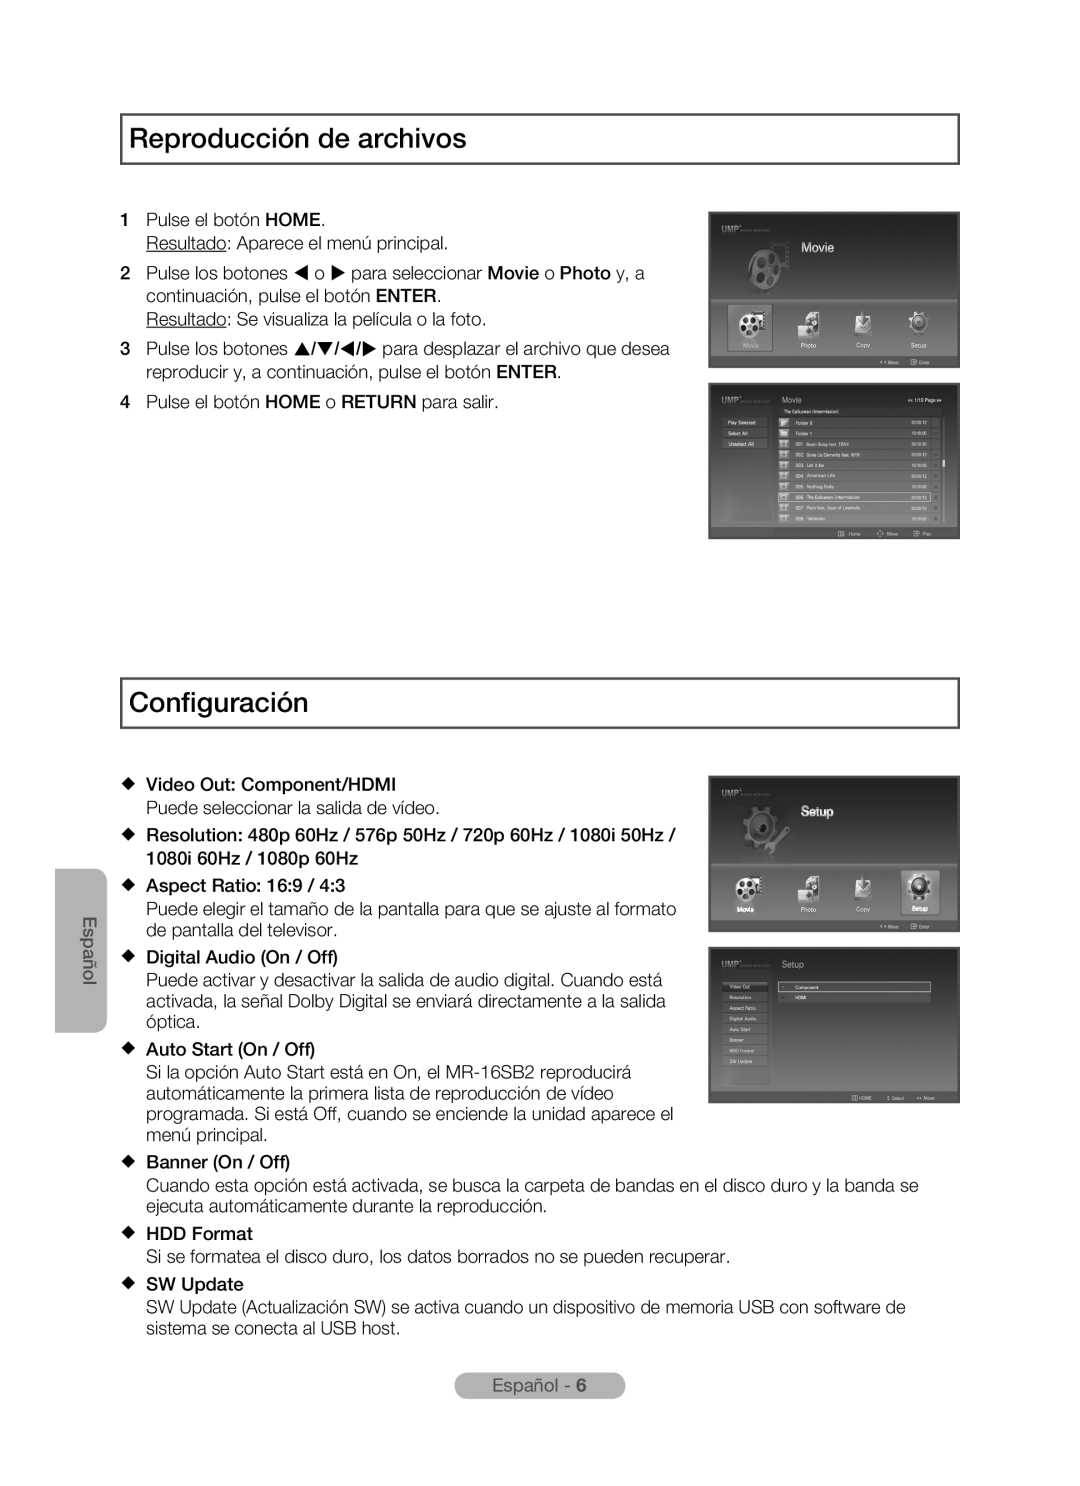 Samsung MR-16SB2 manual Reproducción de archivos, Configuración, Español -  